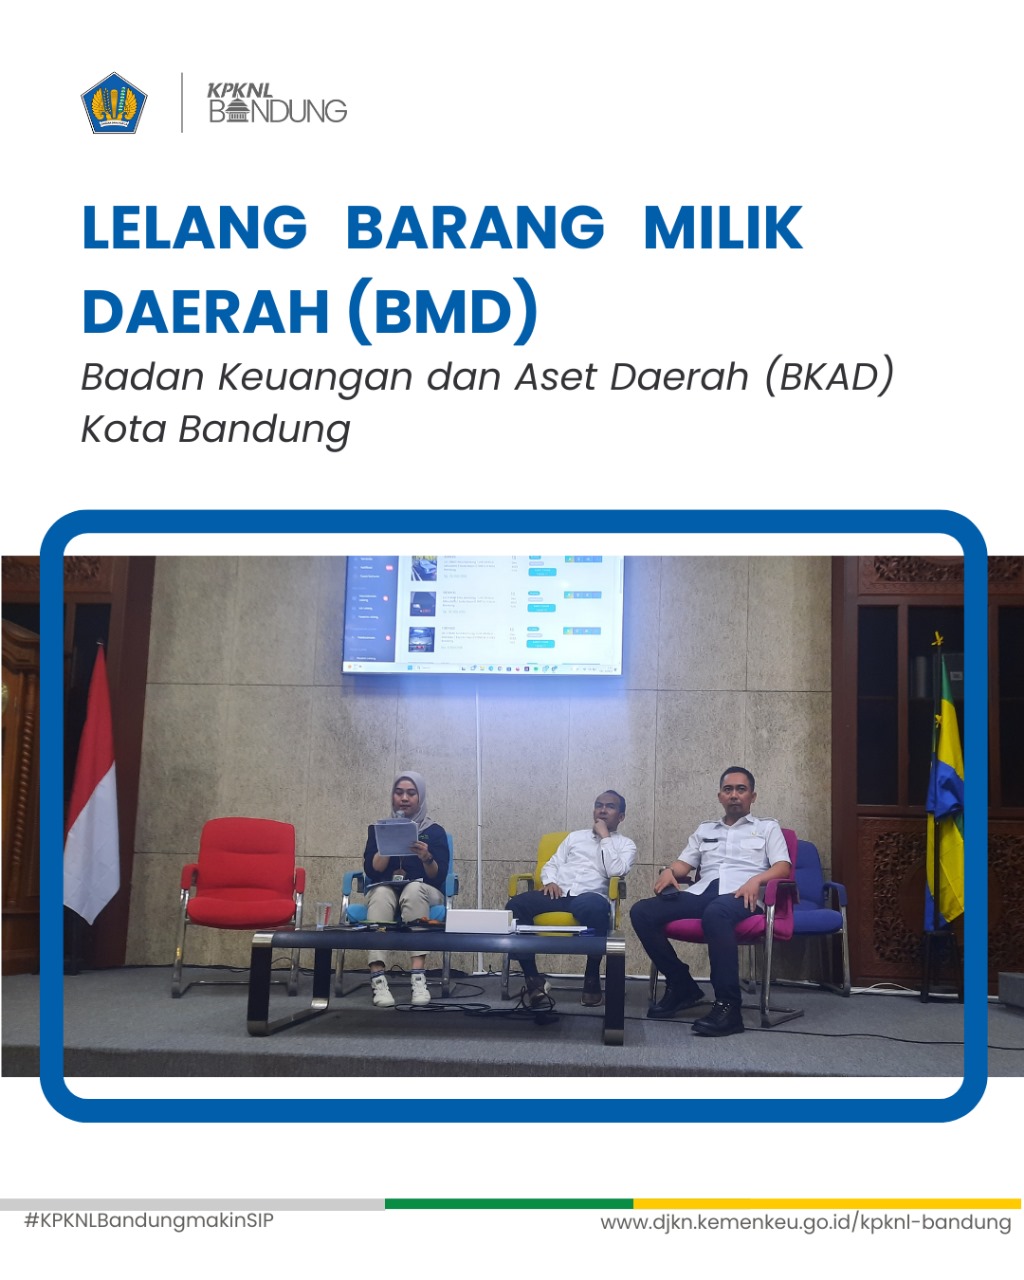 Lelang E-Conventional BMN BKAD Bandung